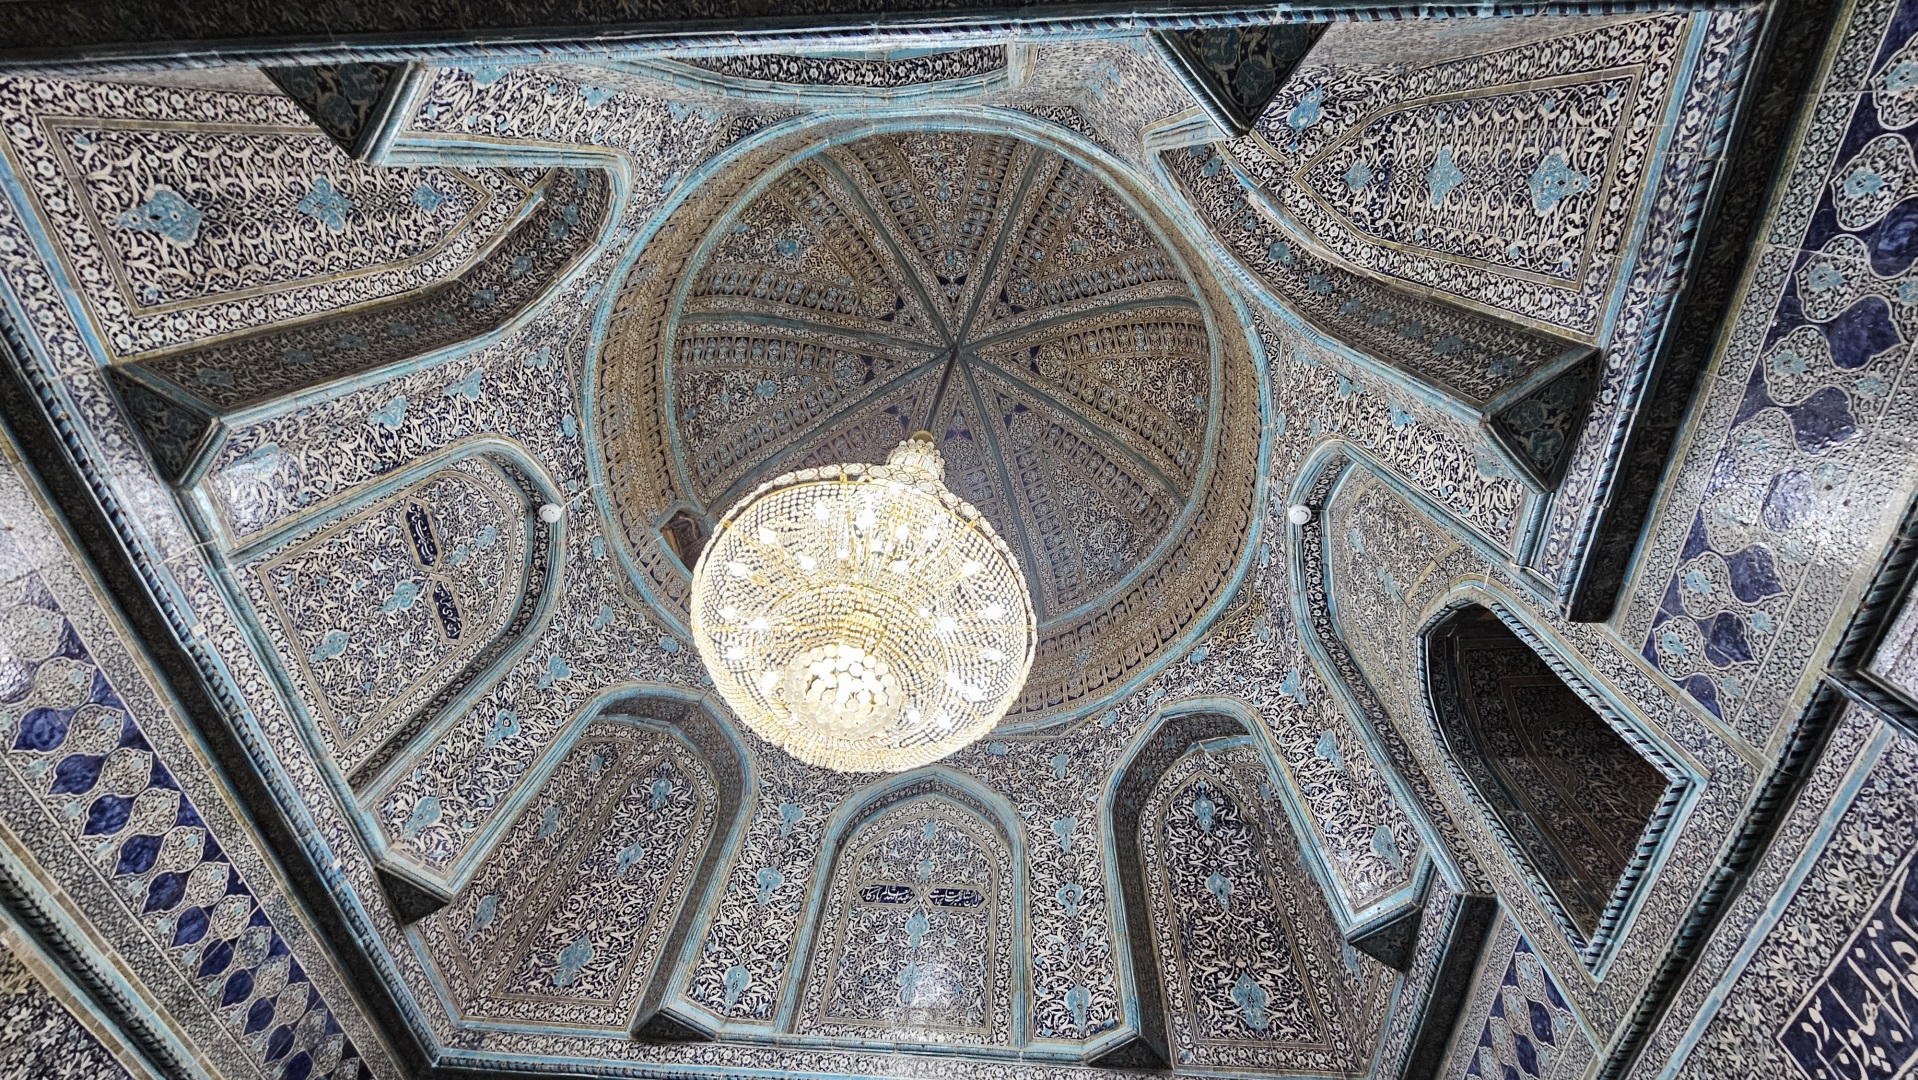 Visiter Khiva - Ouzbékistan